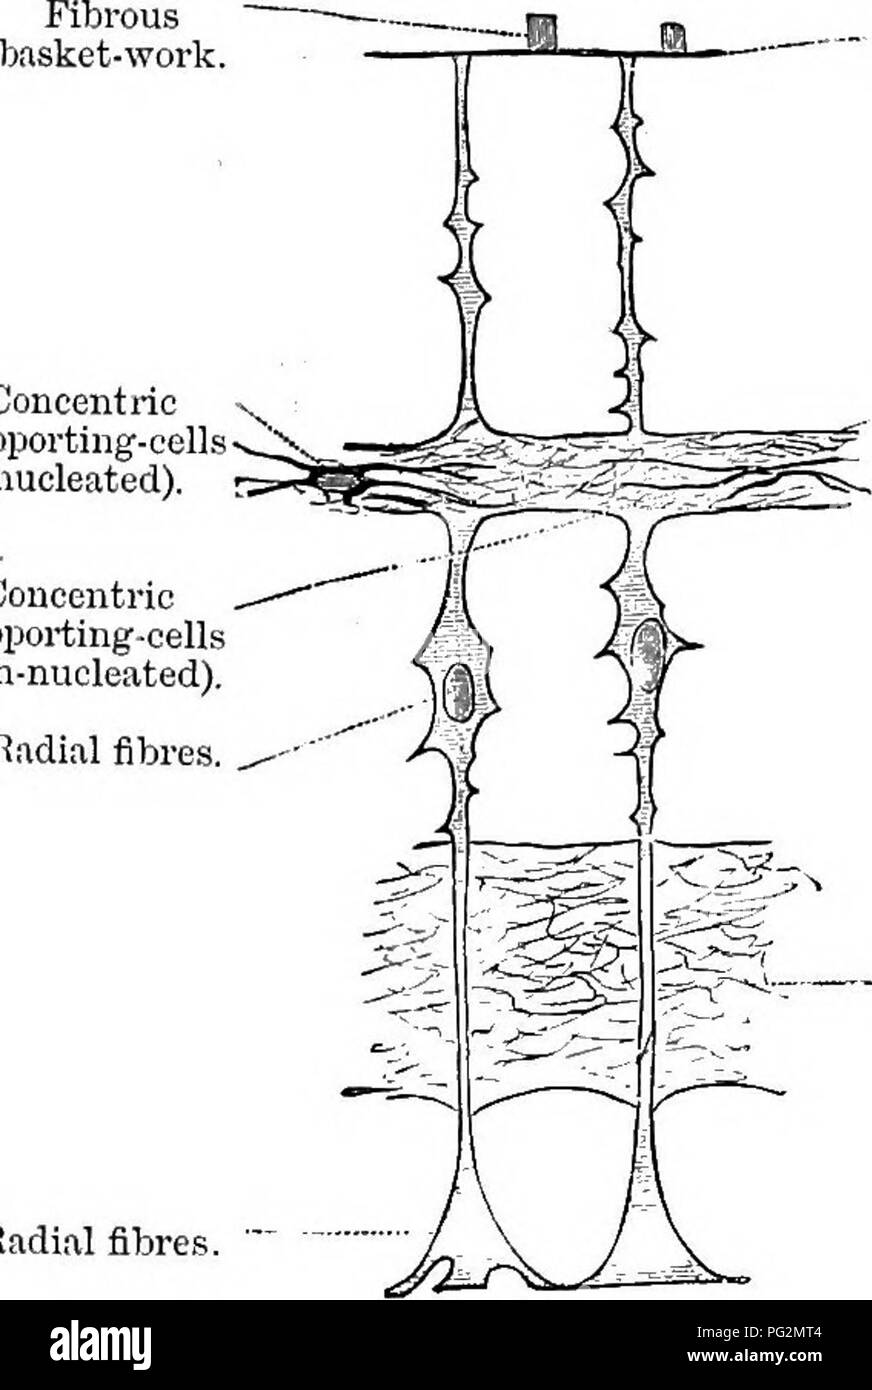 . Éléments de l'anatomie comparée des vertébrés. Anatomie, comparatif. La partie de la rétine 215 Qiervoiis pccrt Si Siud. L'ancien est étiré comme sur un châssis entre la membrane externe et hyaloid limitans. Les éléments nerveux sont disposés en couches concentriques suivantes:Â I. développé à partir de la couche interne de la vésicule optique secondaire. A. Gerehral couche. 1. Couche de fibres nerveuses (du nerf optique). 2. Couche de cellules ganglionnaires. 3. Couche réticulaire intérieure. 4. La couche granulaire (intérieur). 5. Couche extérieure sous-épithéliaux ou réticulaire. B. couche épithéliale. 6. Couche de cellules visuelles (couche granulaire externe Banque D'Images